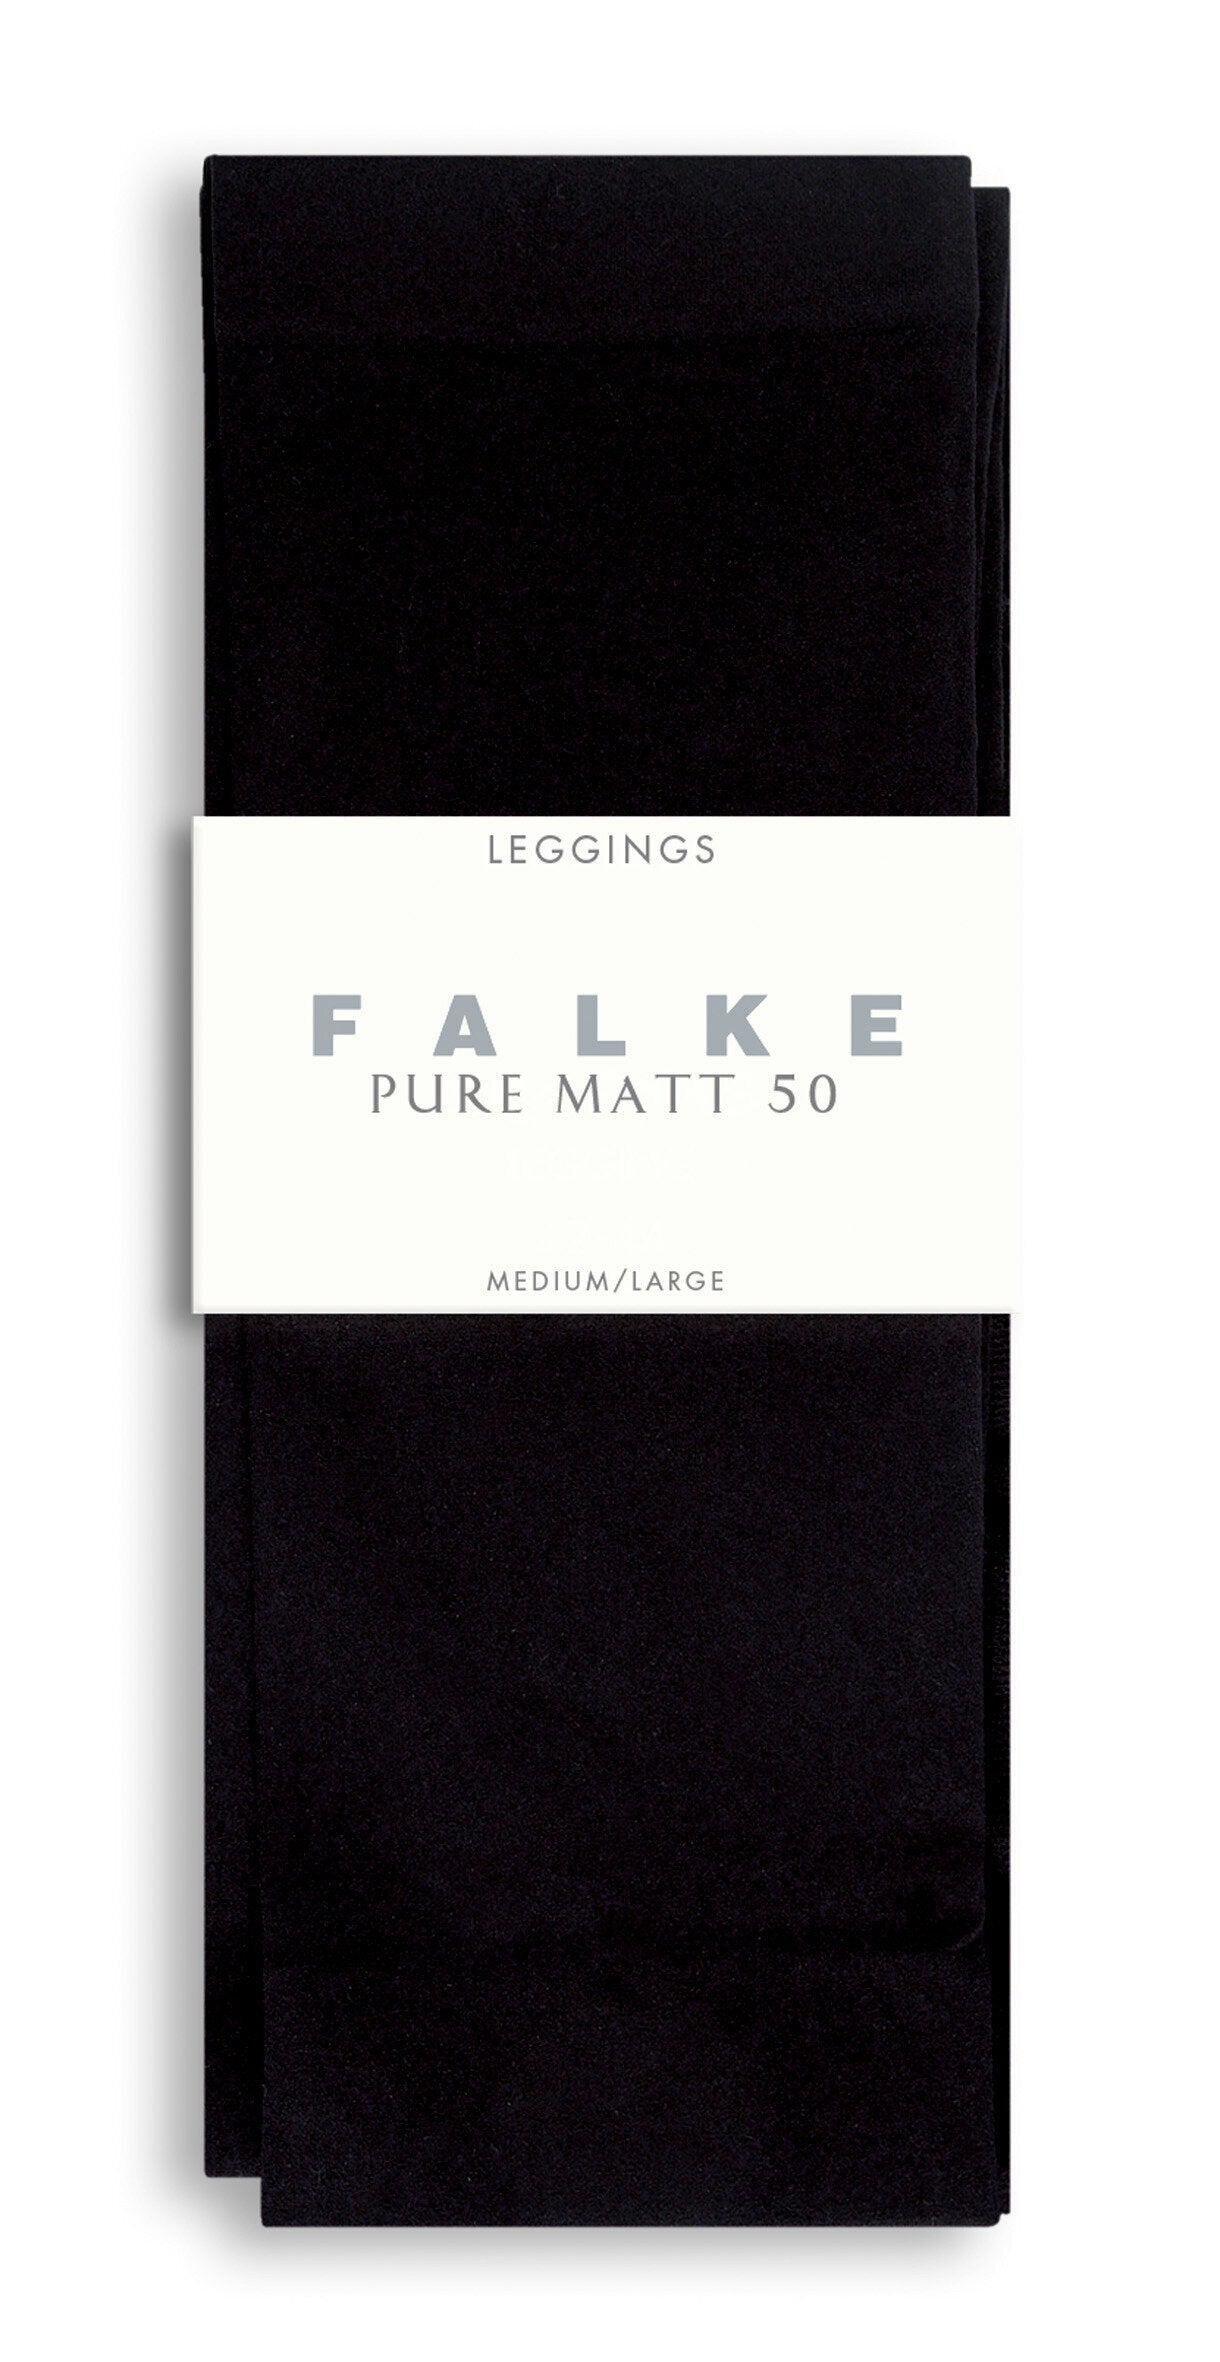 FALKE Pure Matt 50 LE - 40789